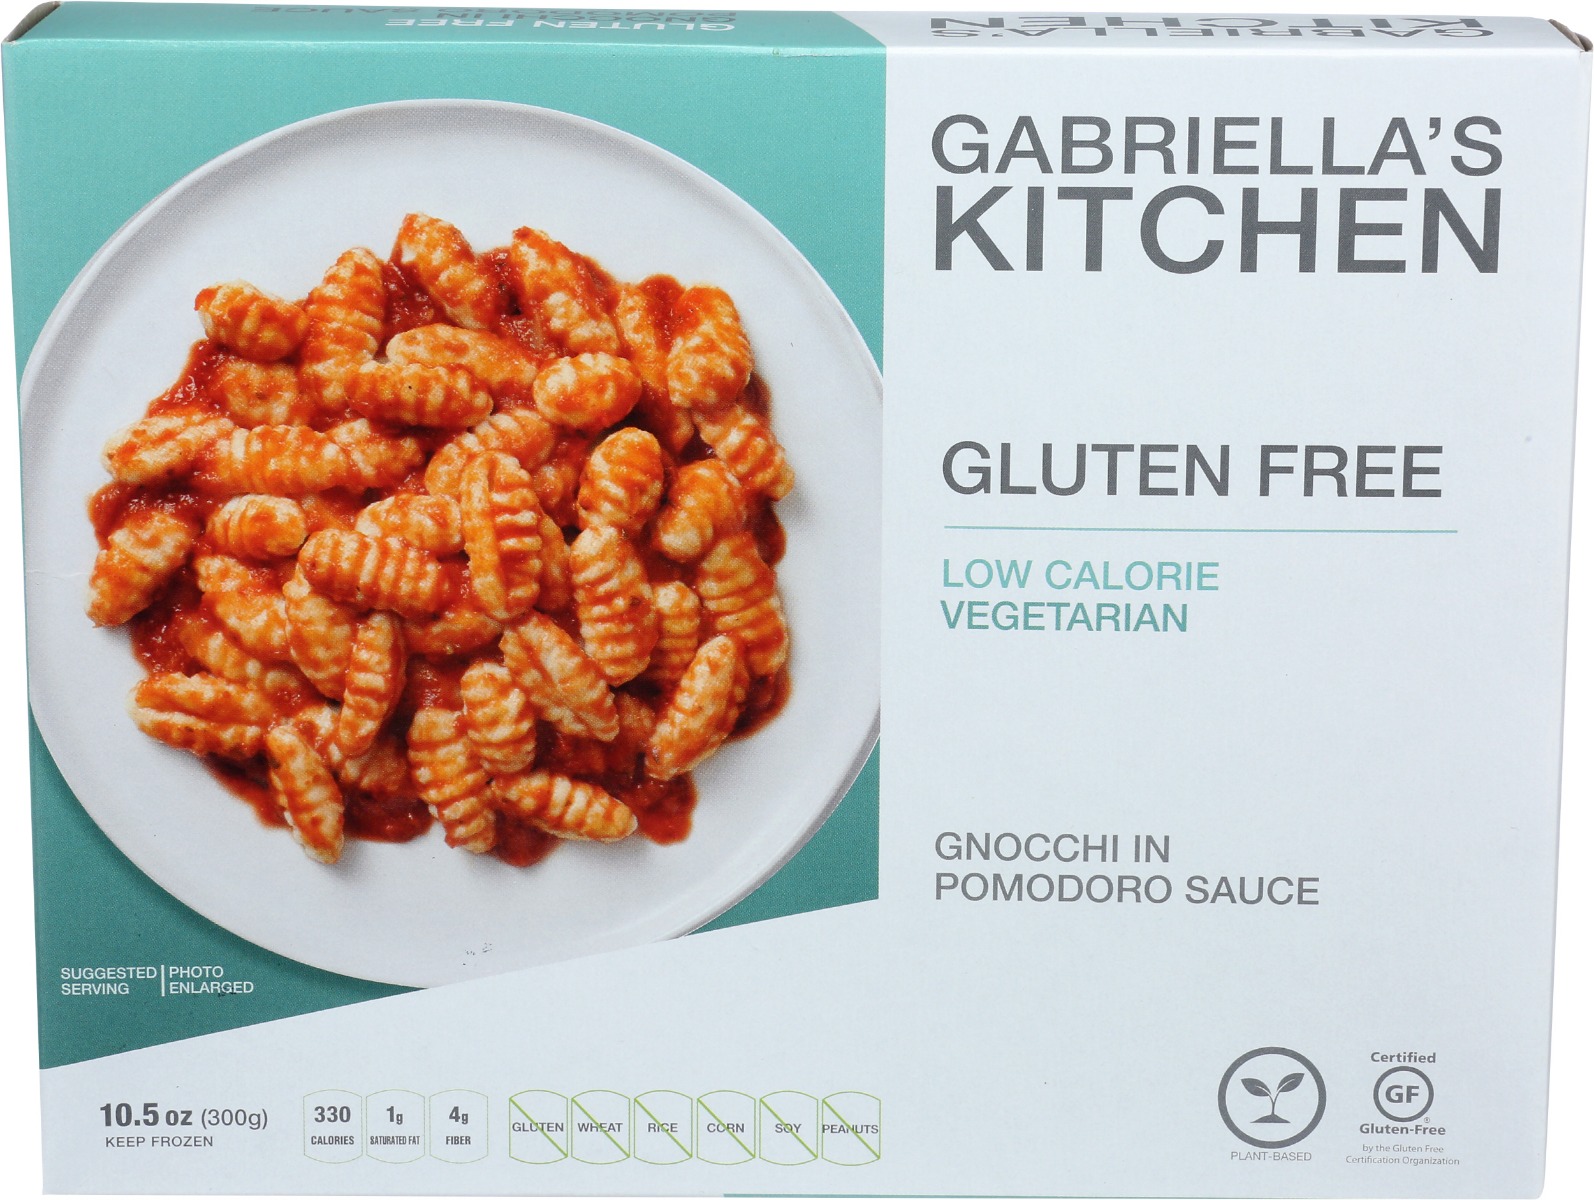 GABRIELLAS KITCHEN: Gluten Free Gnocchi in Pomodoro Sauce, 10.50 oz - 0187813000448